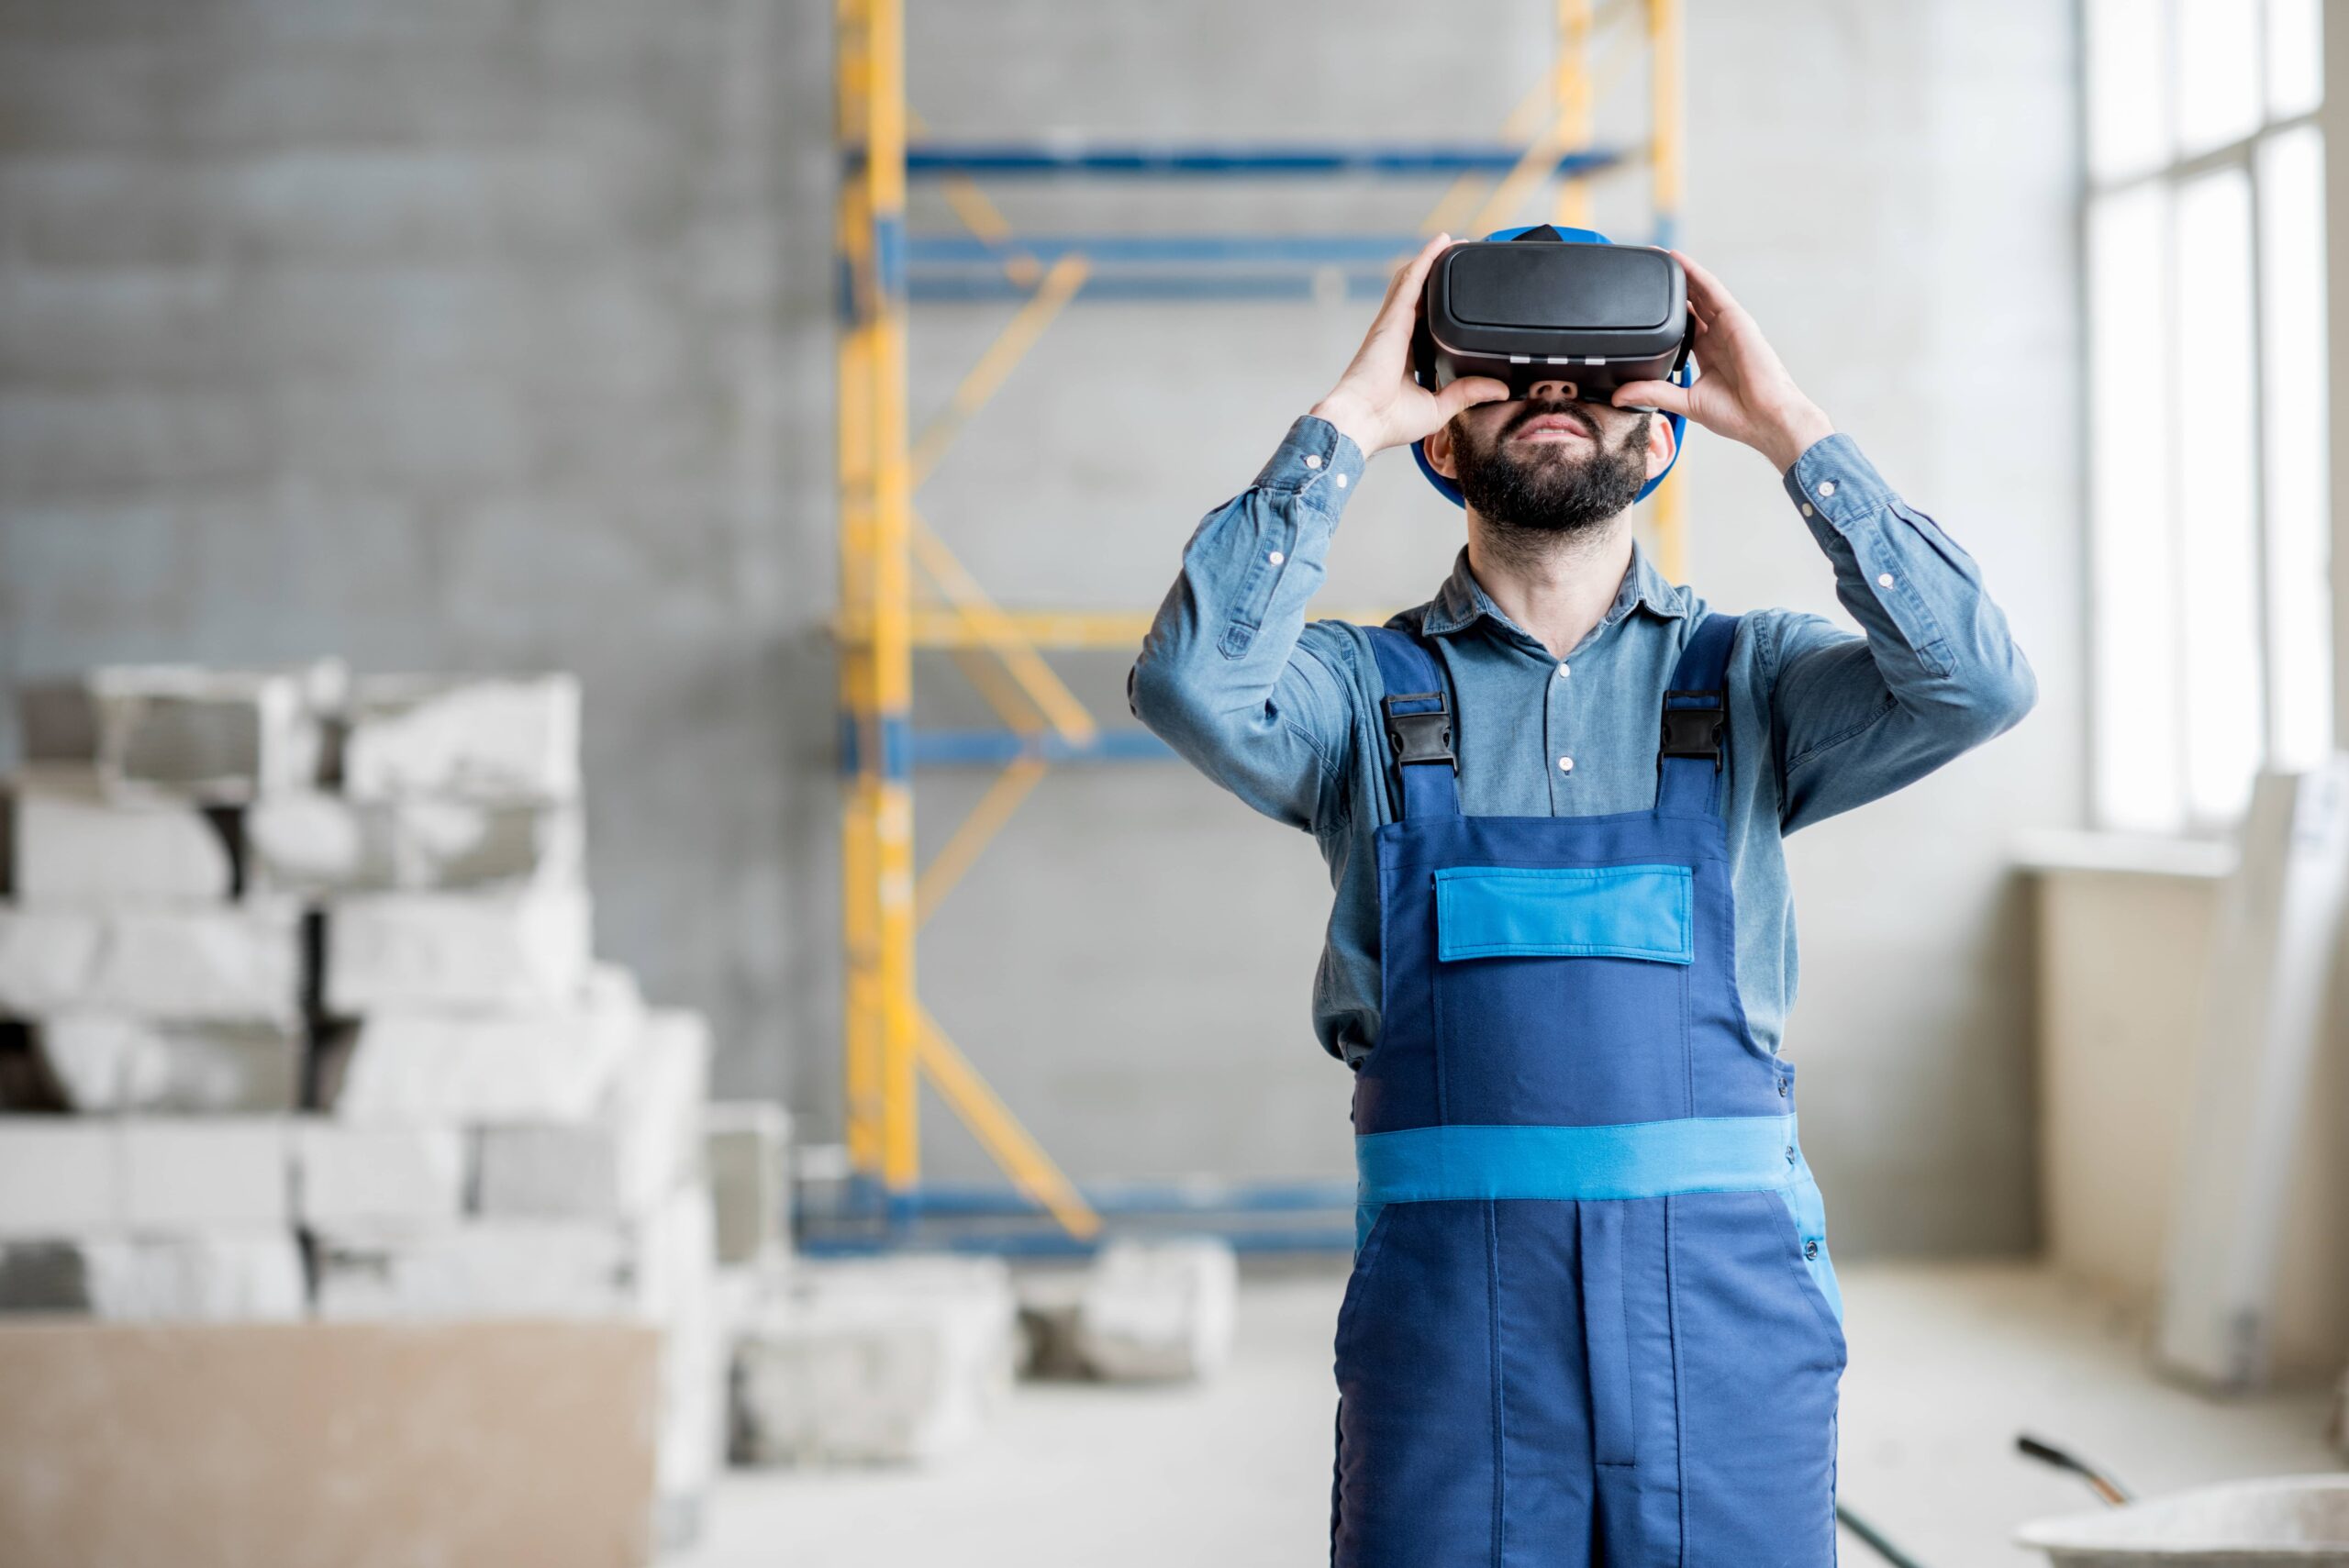 Réalité virtuelle : quel impact dans la formation dans le secteur BTP ?